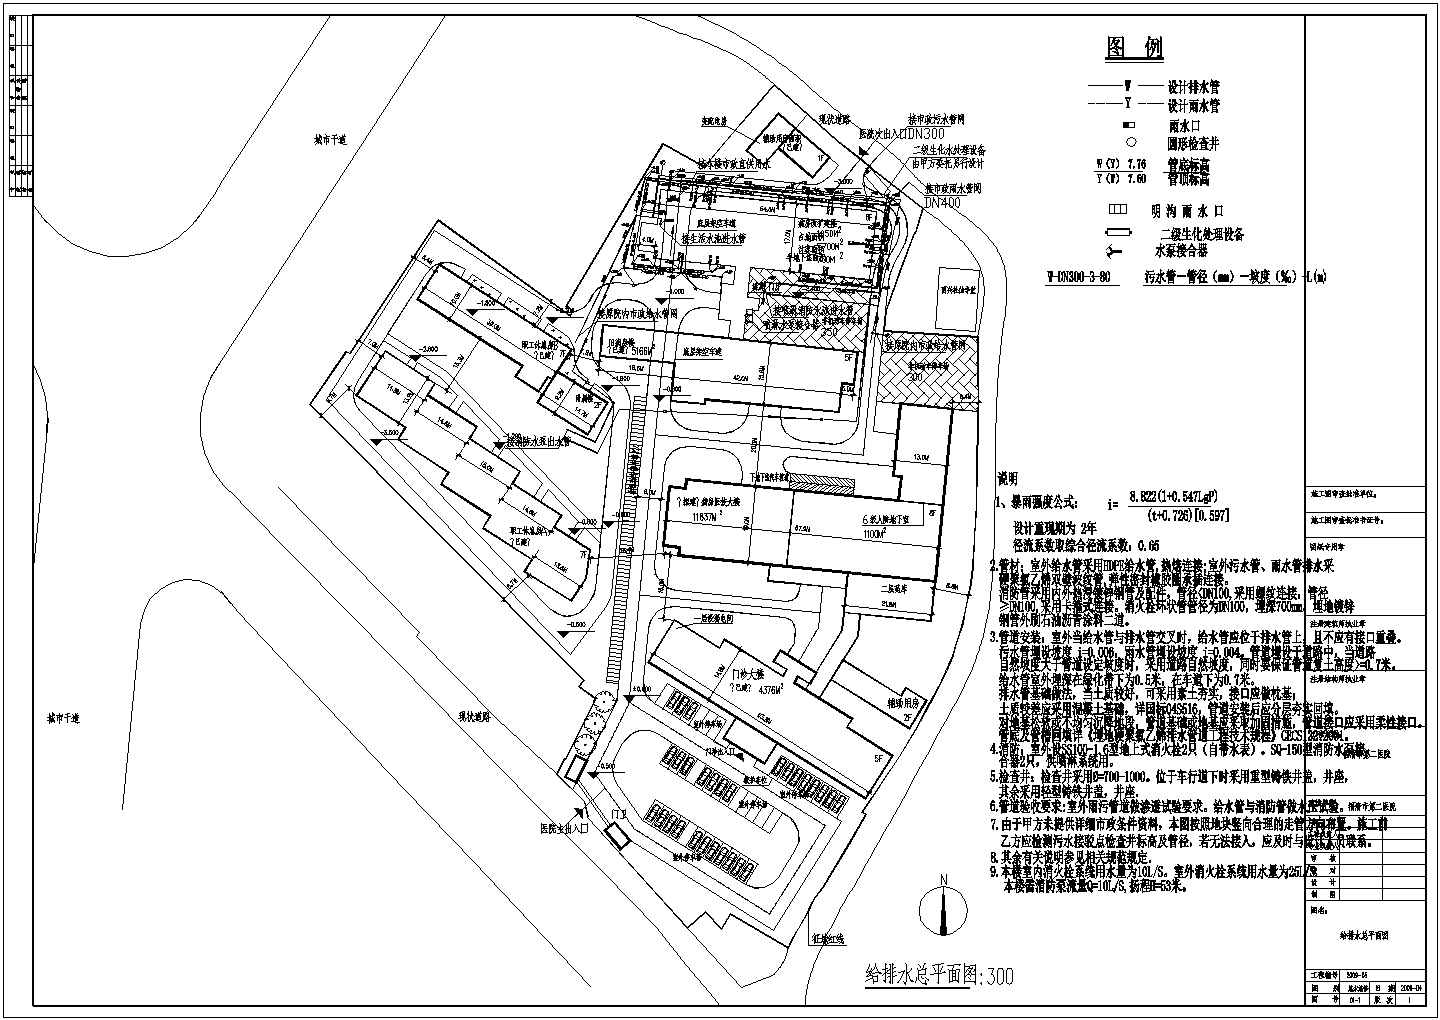 福清市第二医院五层给排水施工图纸